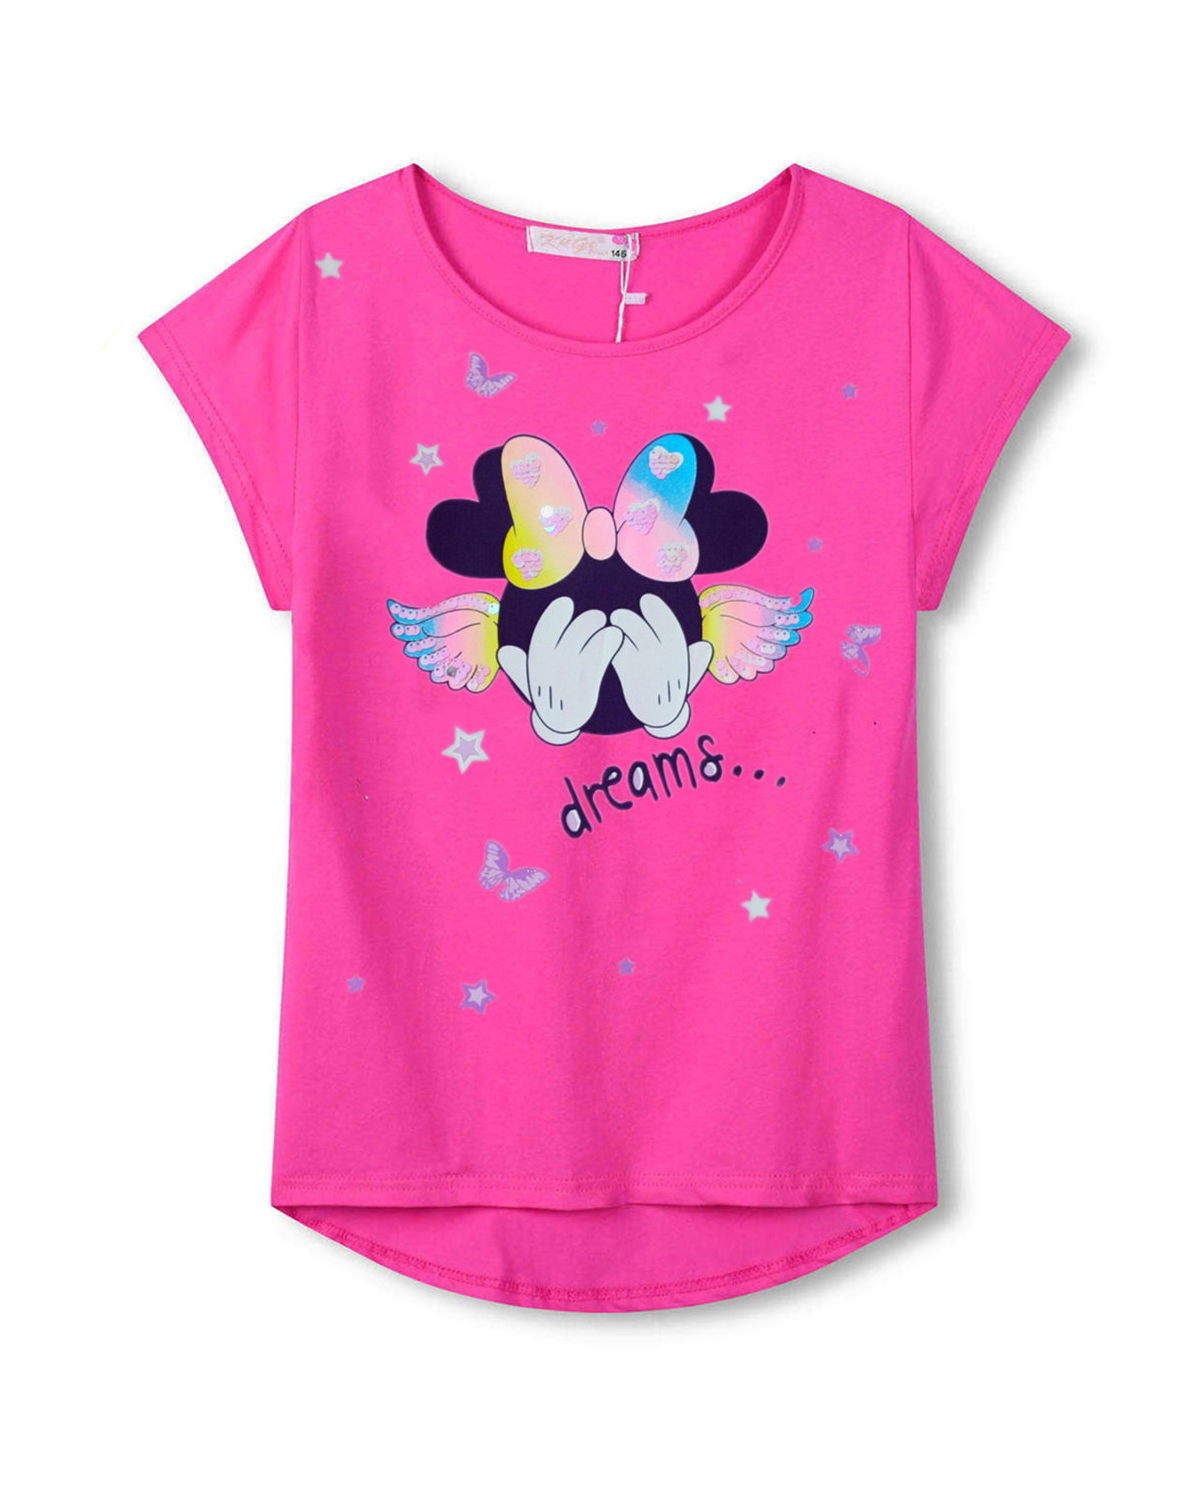 Dívčí tričko - KUGO WT0885, tmavě růžová Barva: Růžová, Velikost: 110